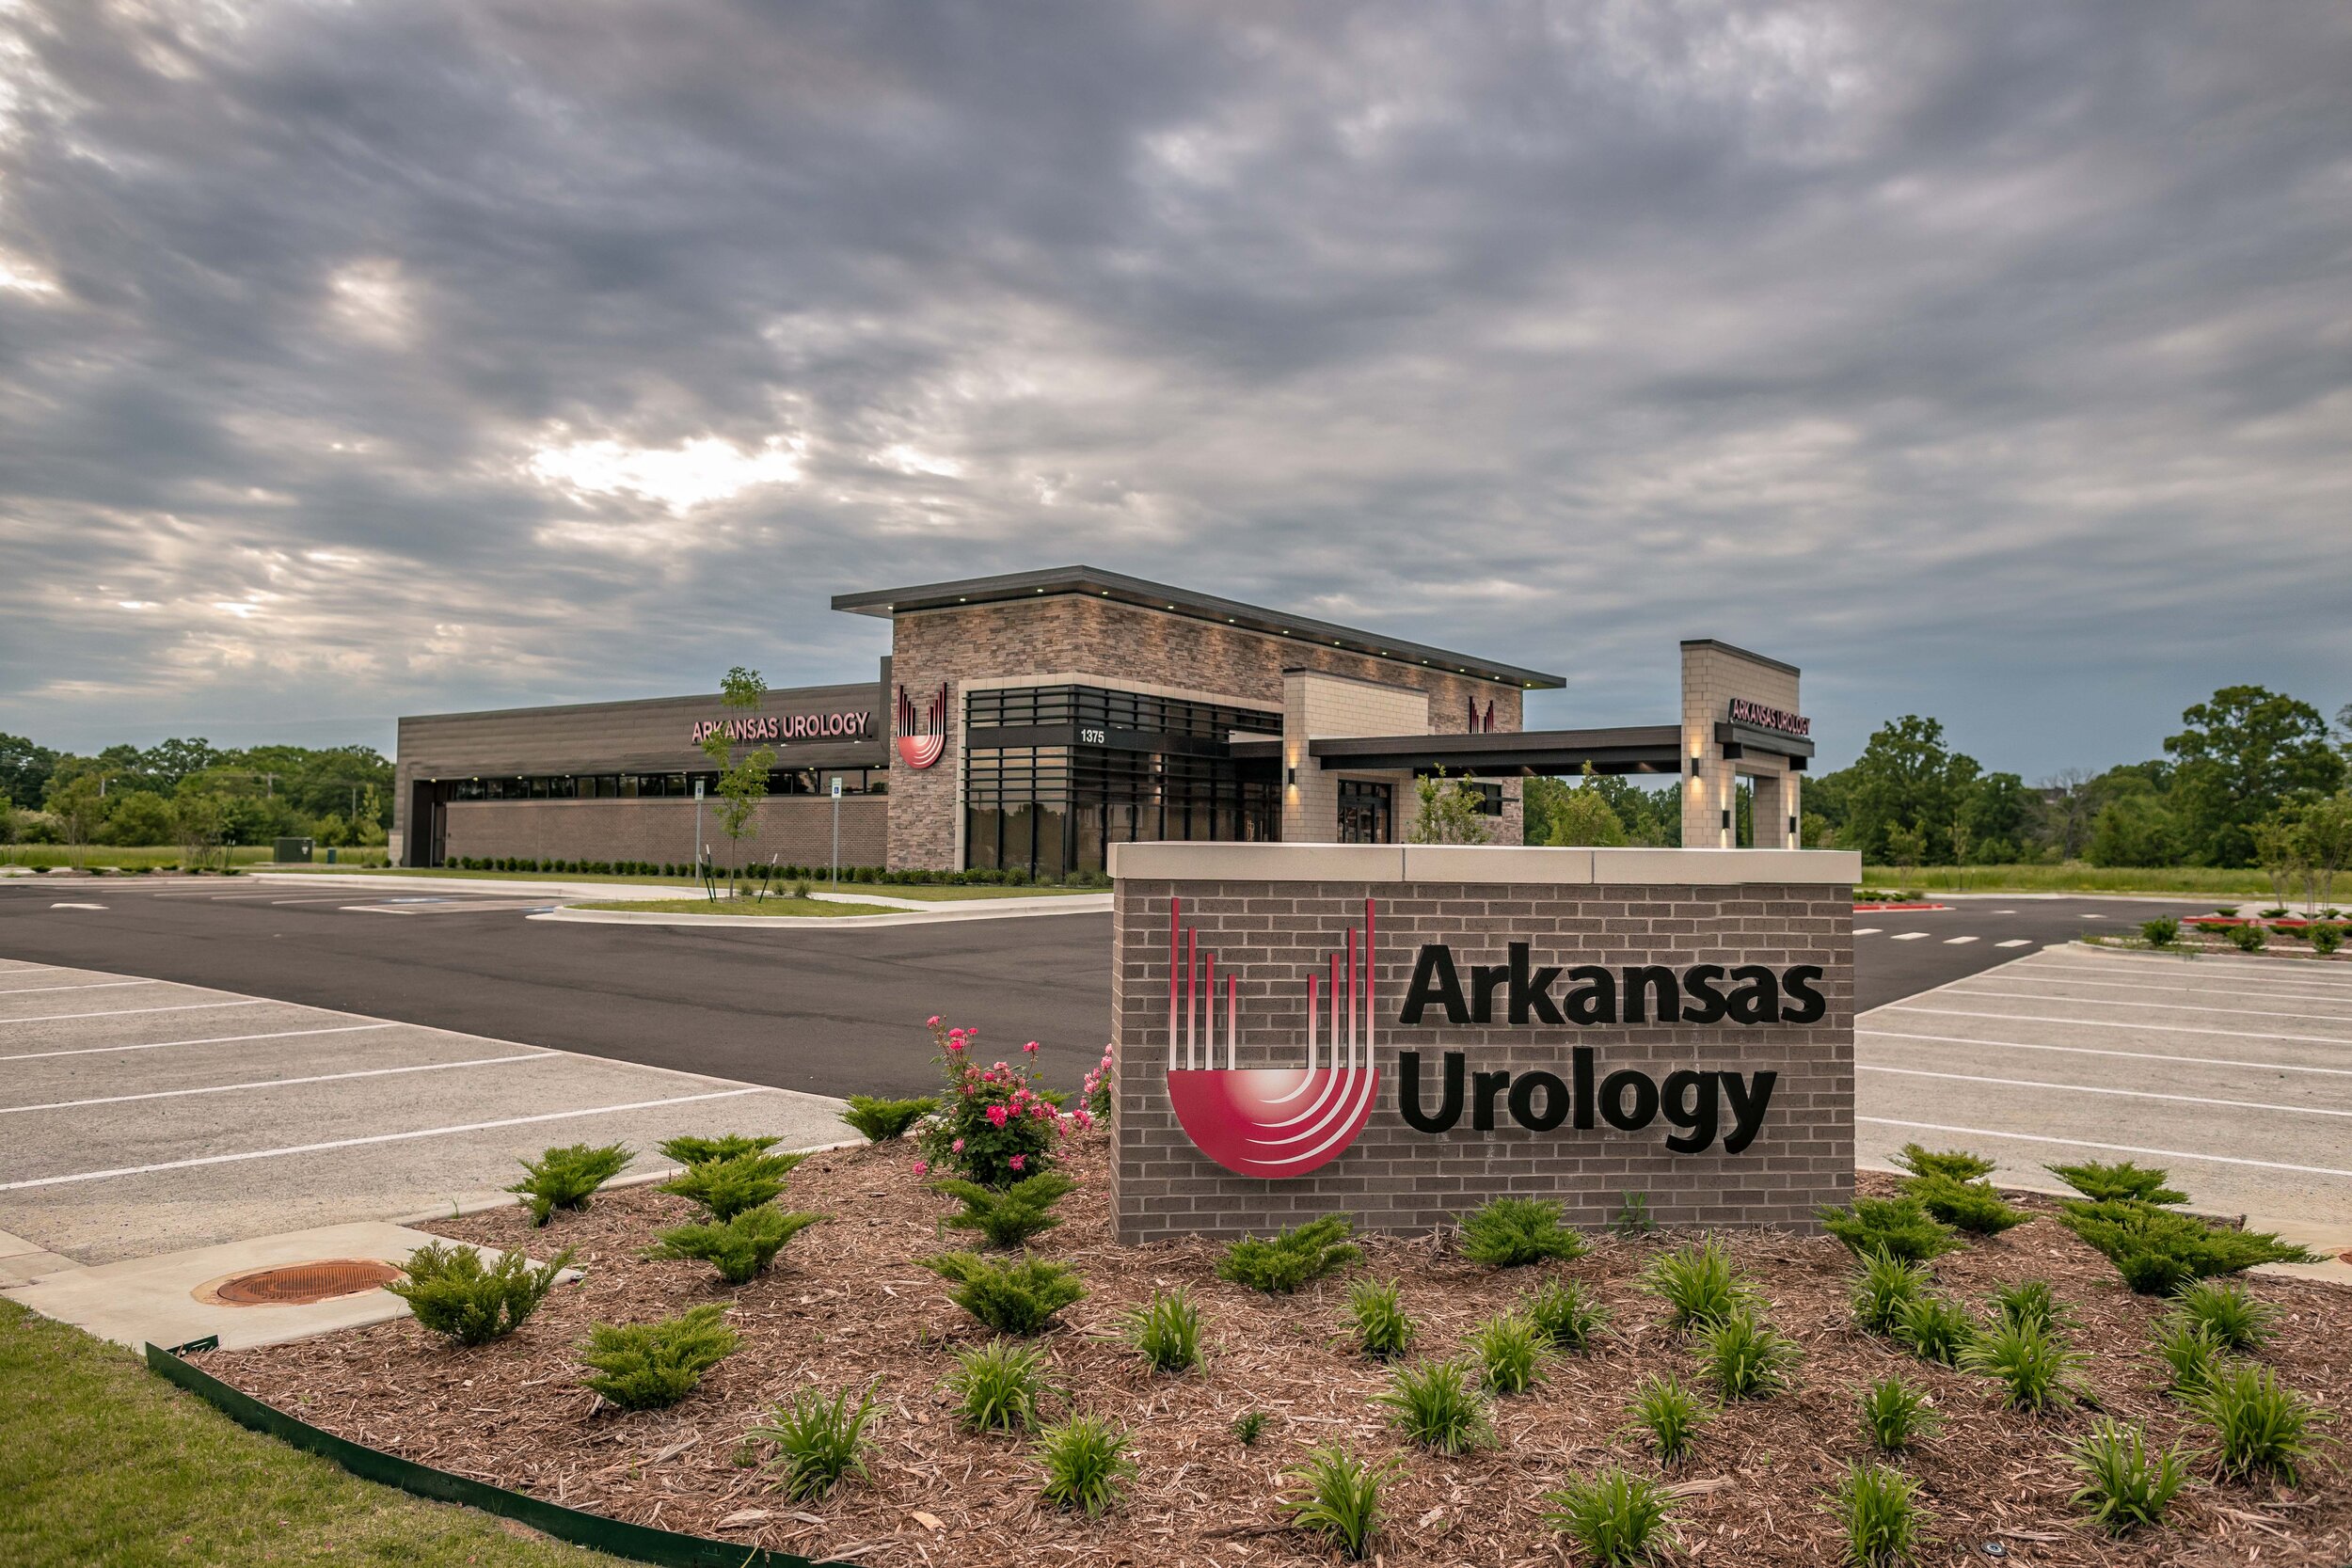 Arkansas Urology-5.jpg